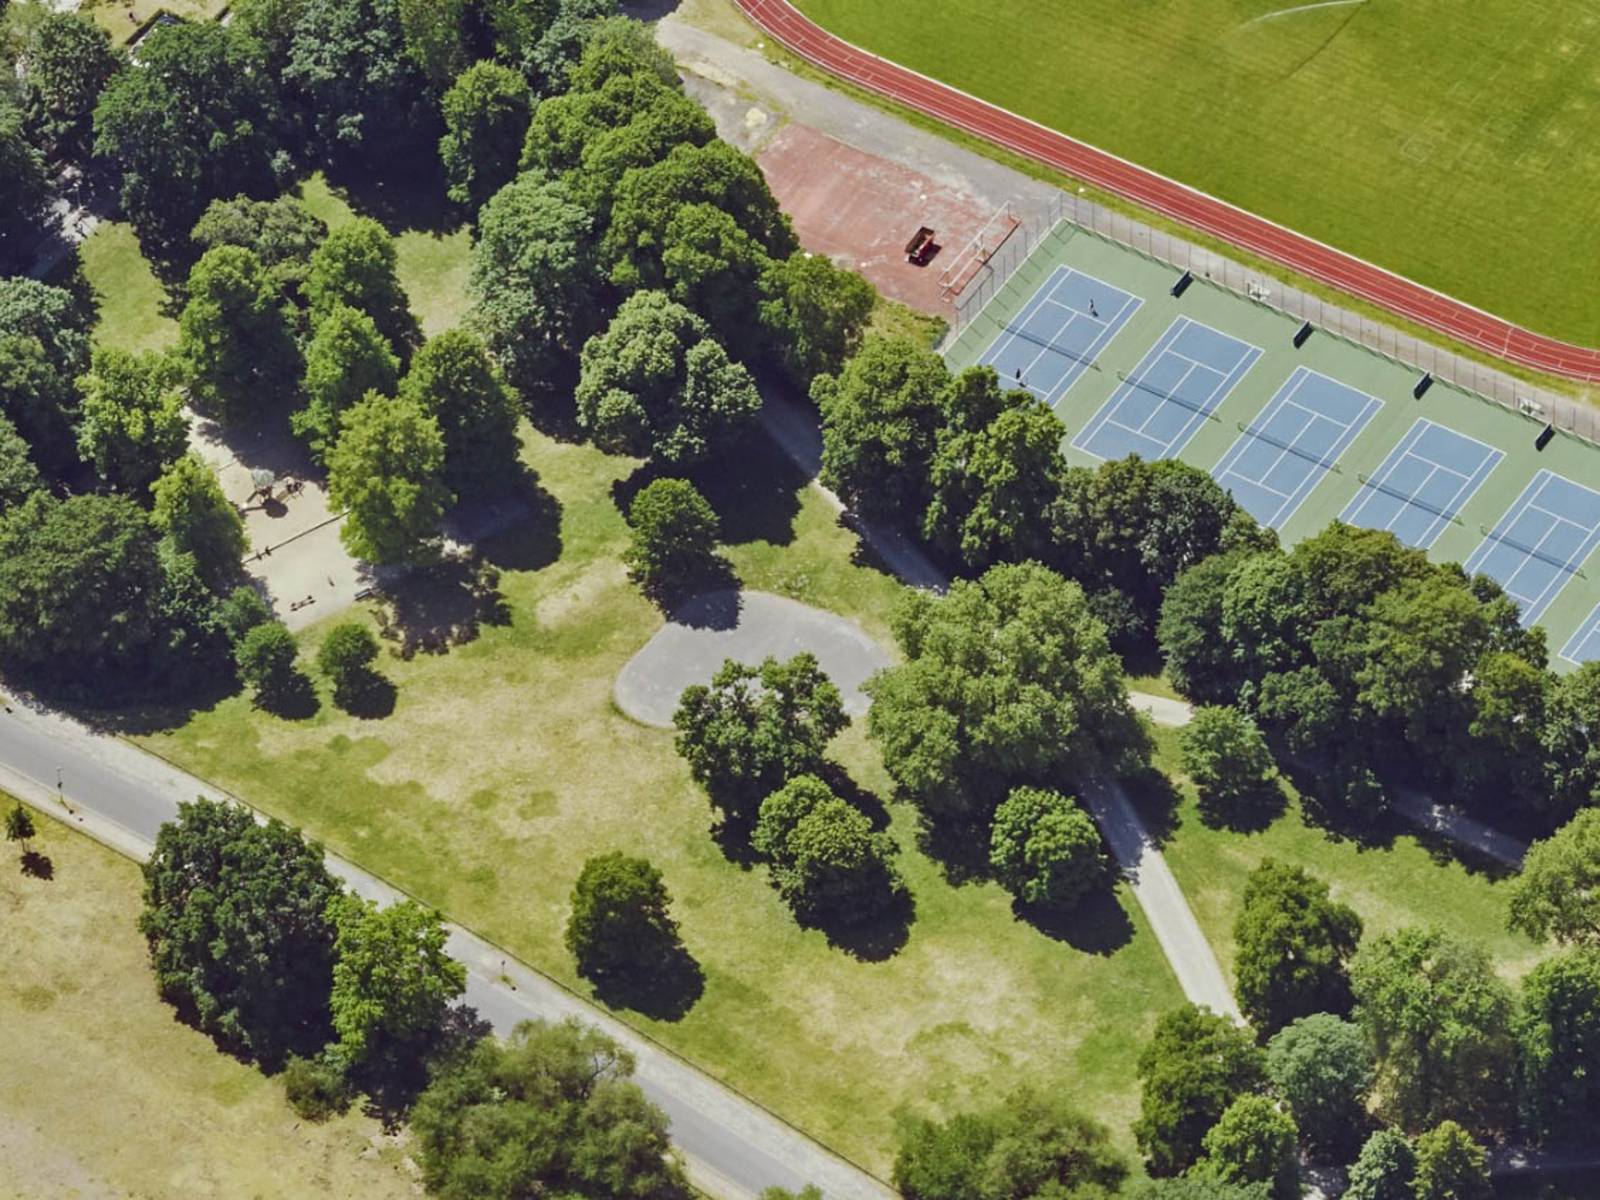 Luftbildaufnahme des Skateplatzes im Georgengarten.